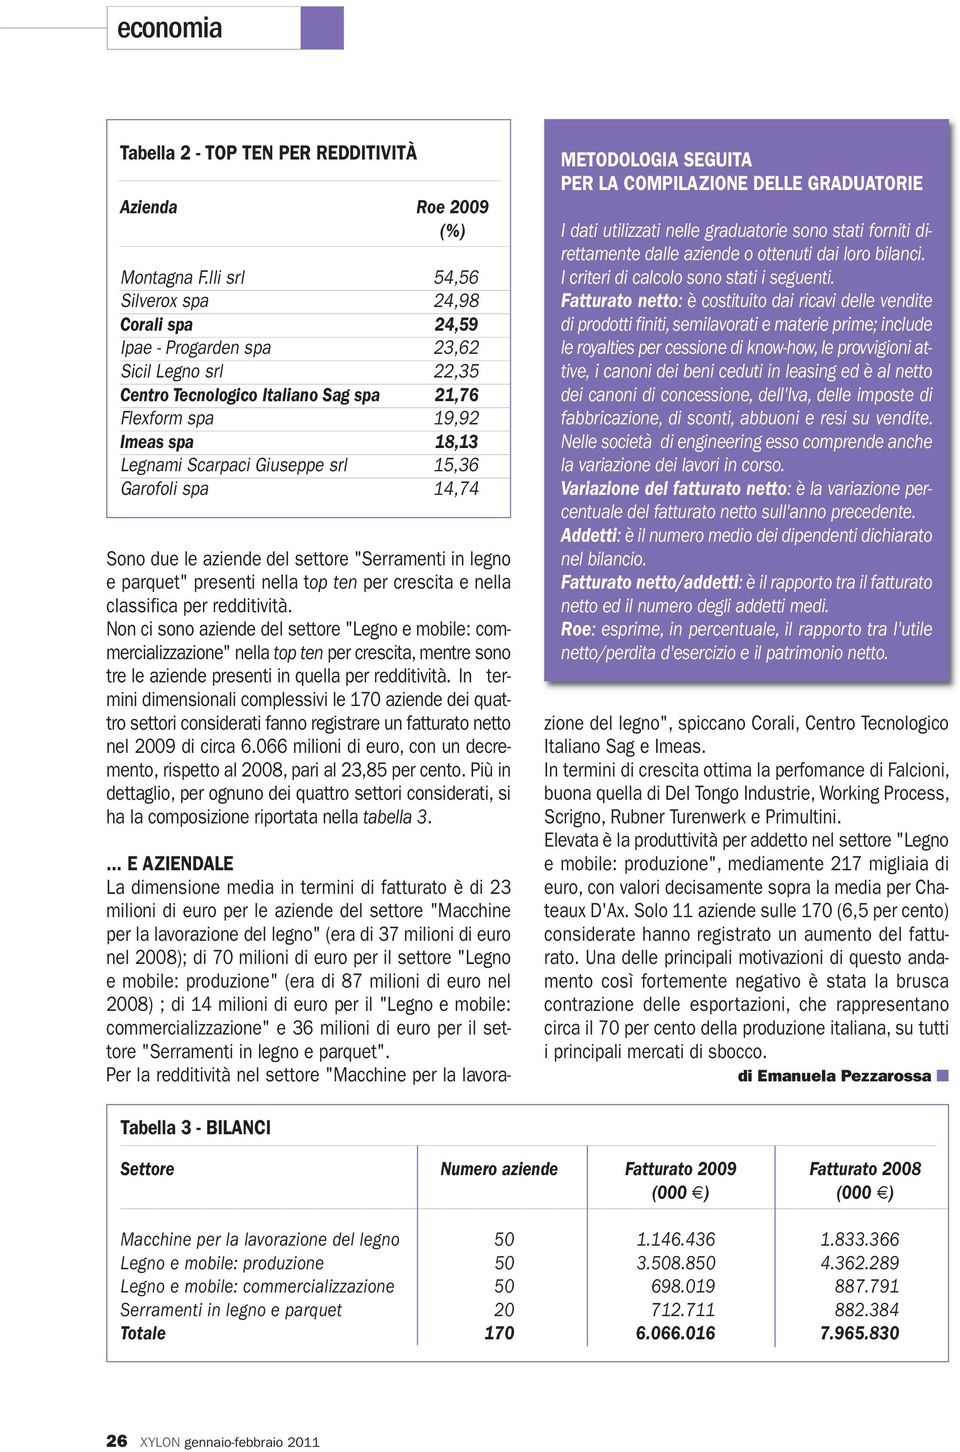 Giuseppe srl 15,36 Garofoli spa 14,74 Sono due le aziende del settore "Serramenti in legno e parquet" presenti nella top ten per crescita e nella classifica per redditività.